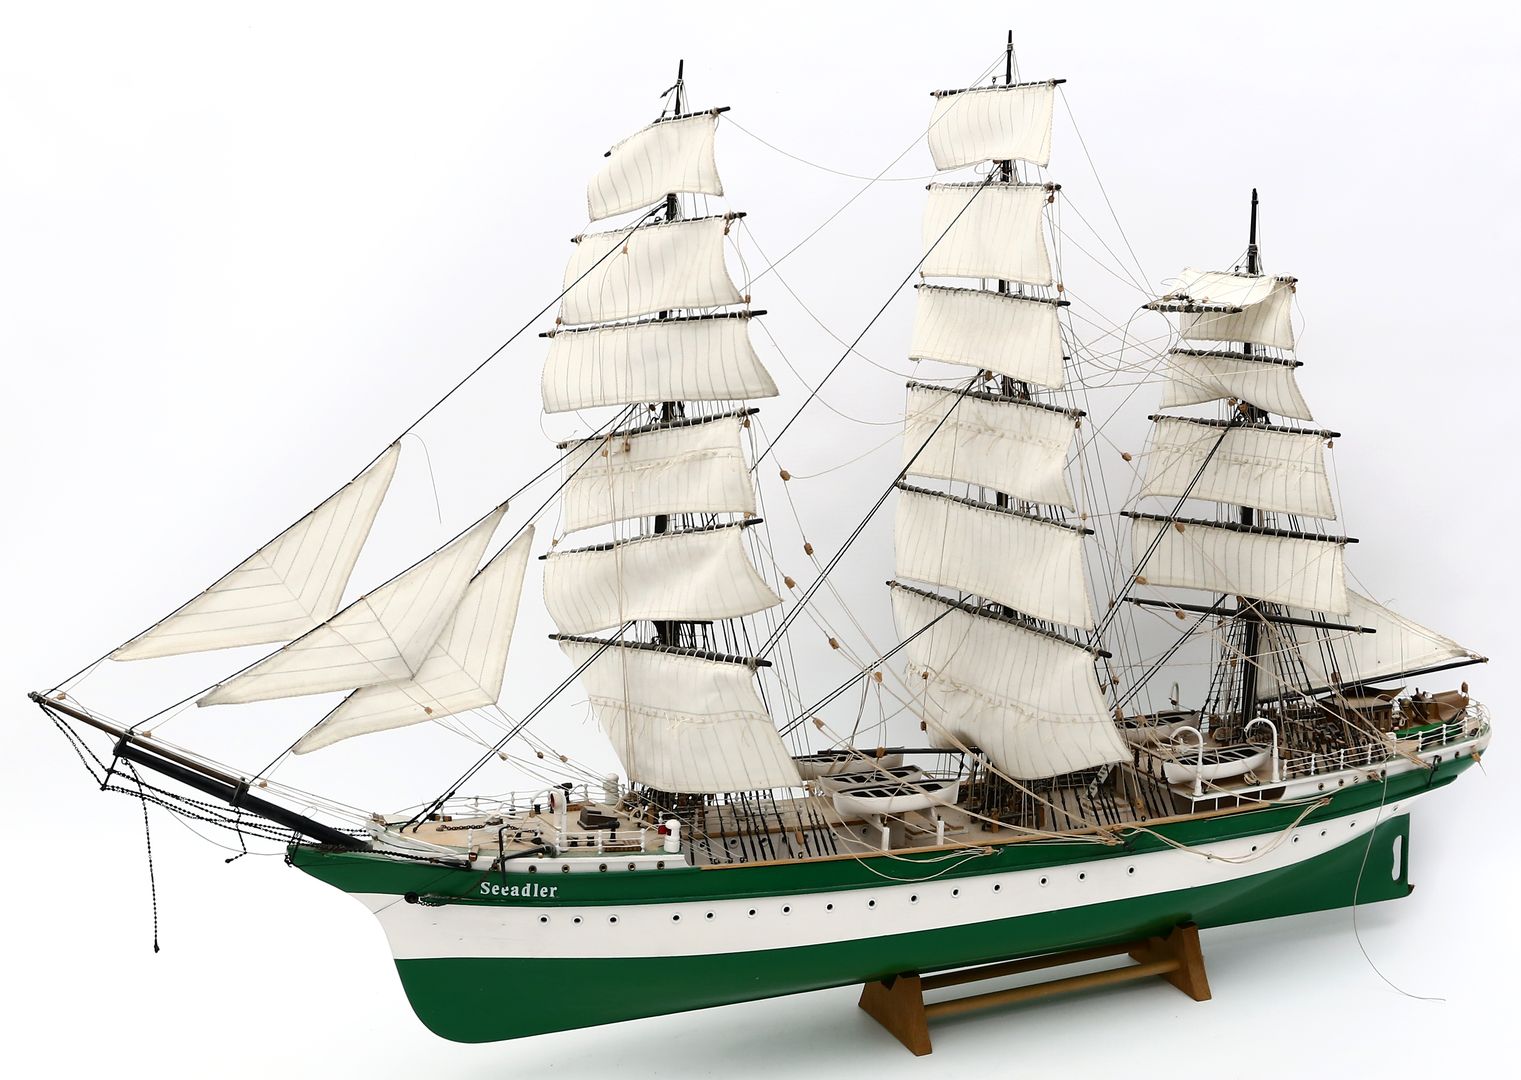 Modellschiff "Seeadler".